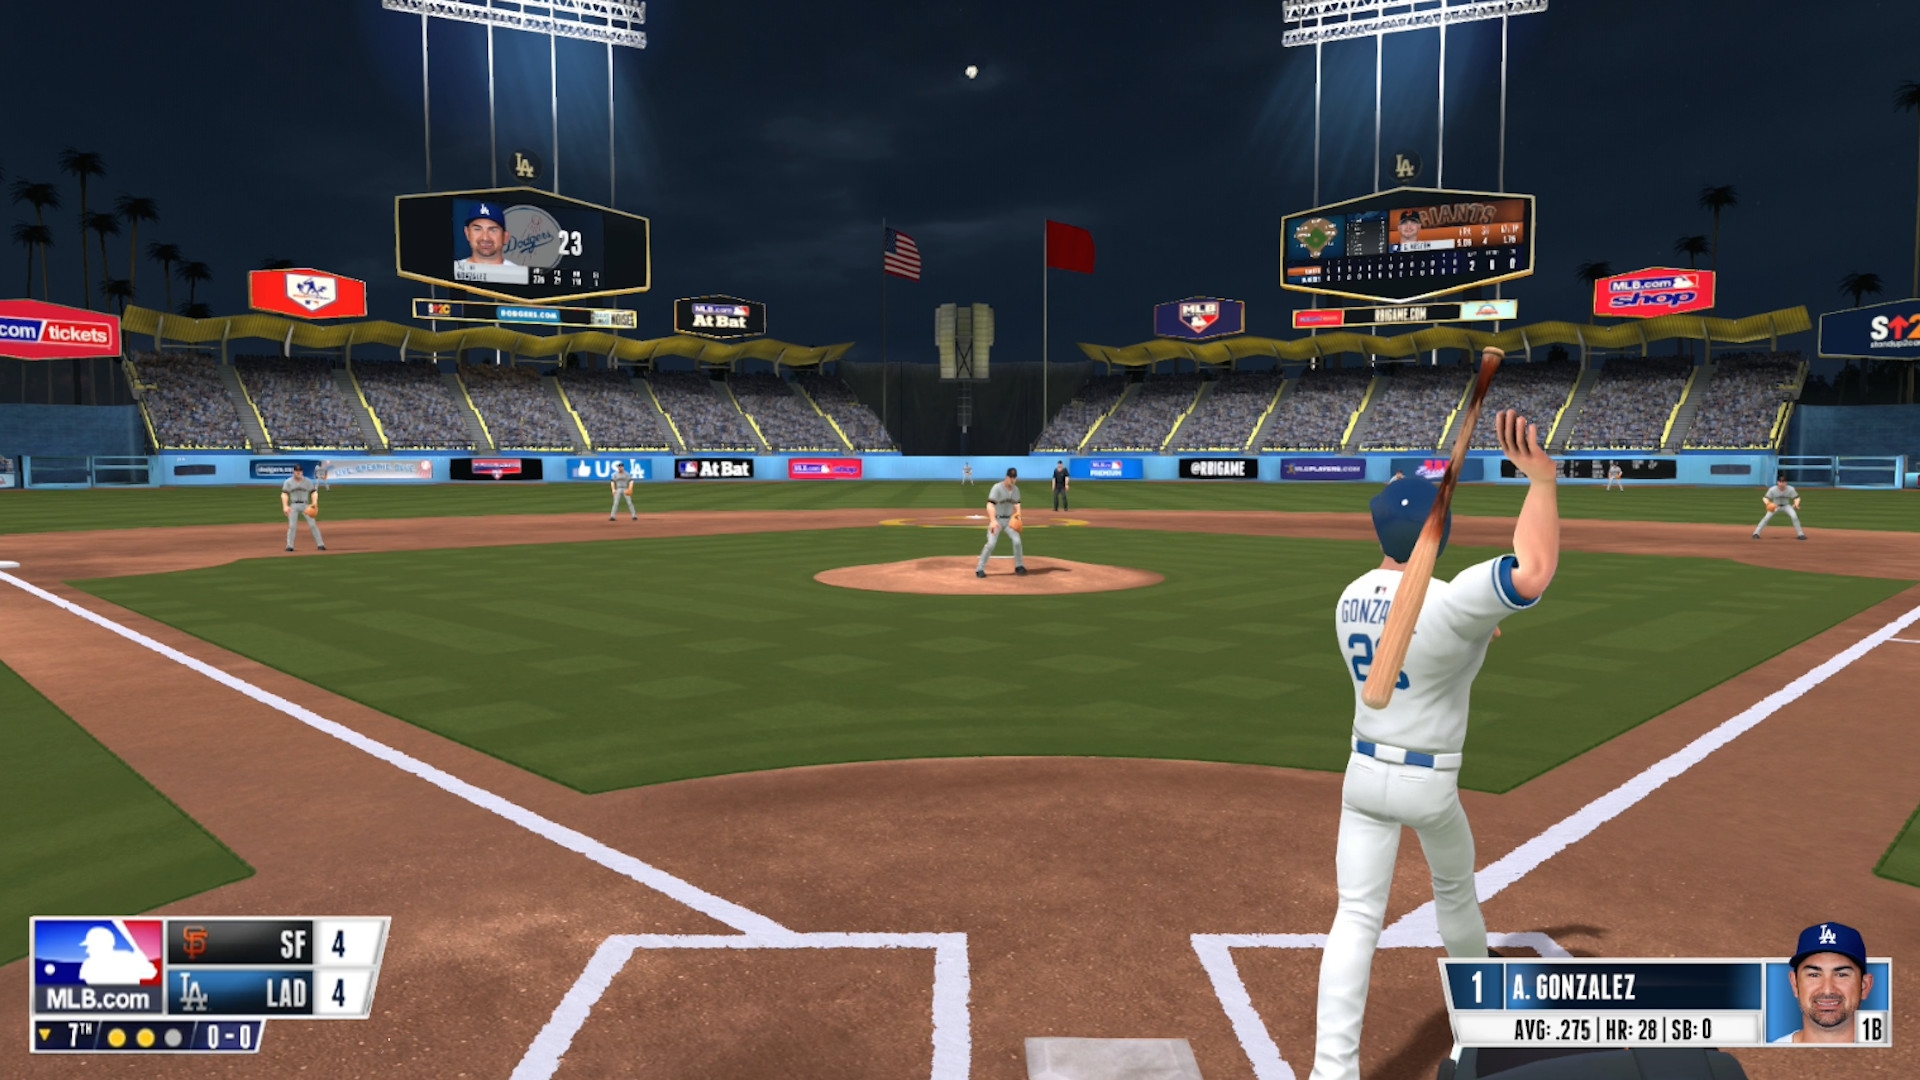 Скриншот из игры R.B.I. Baseball 16 под номером 10